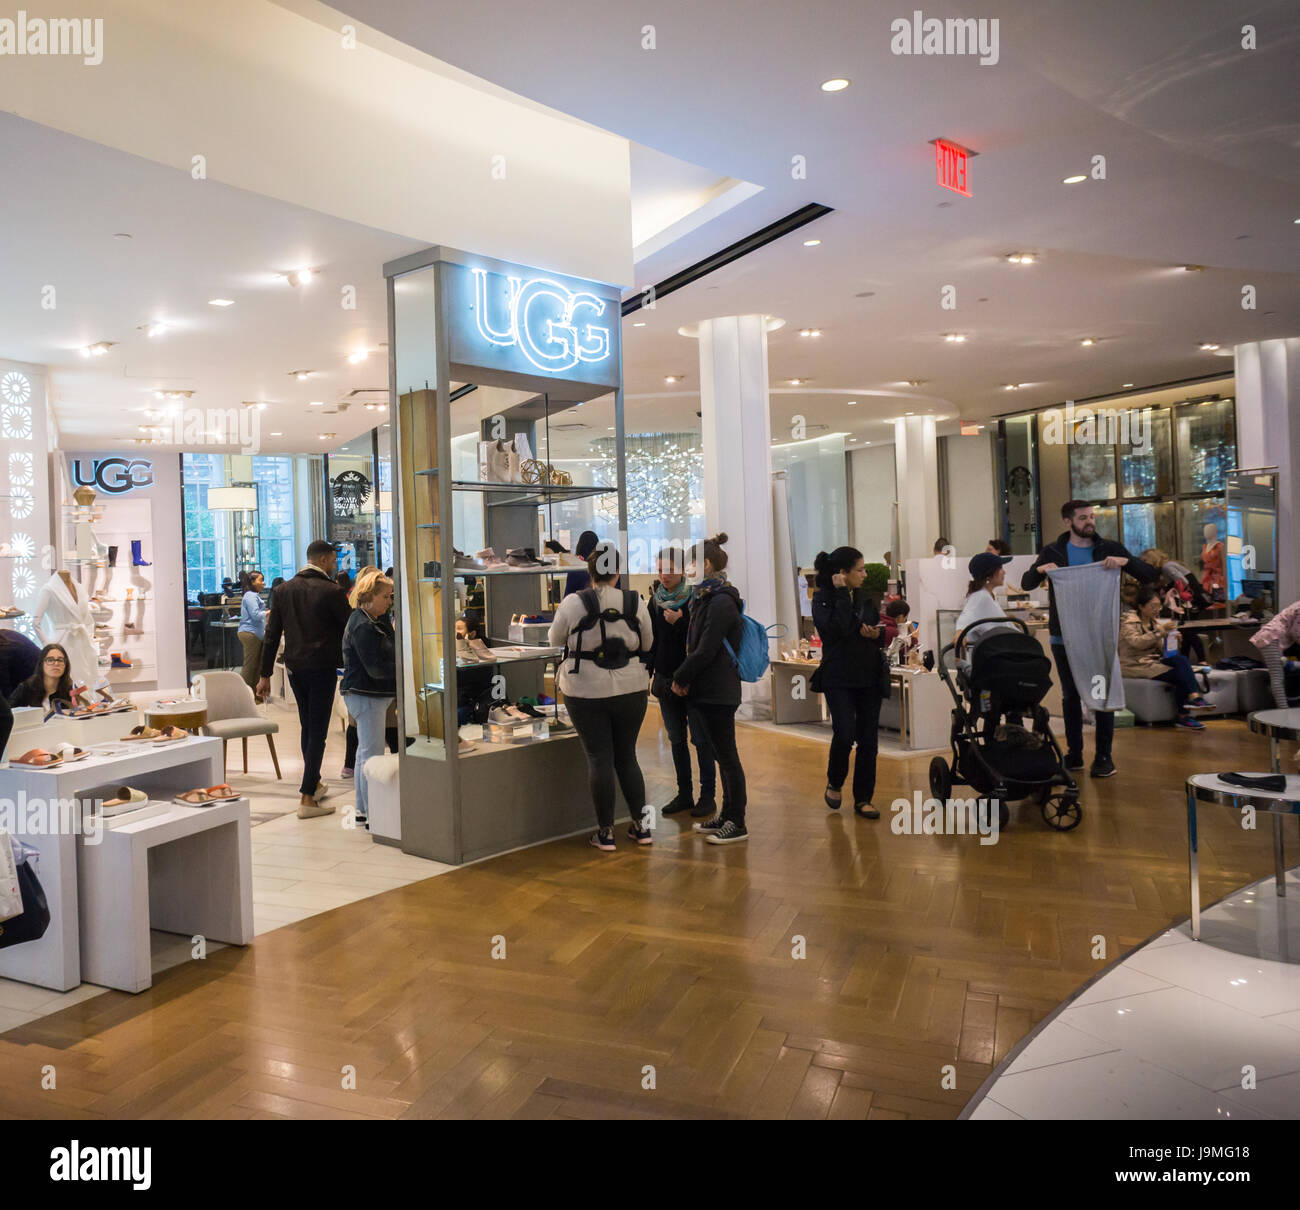 La Ugg boutique dans le rayon chaussures dans le Macy's Herald Square  flagship store à New York le lundi 29 mai, 2017. Deckers Outdoor  Corporation, la société mère de la marque Ugg,